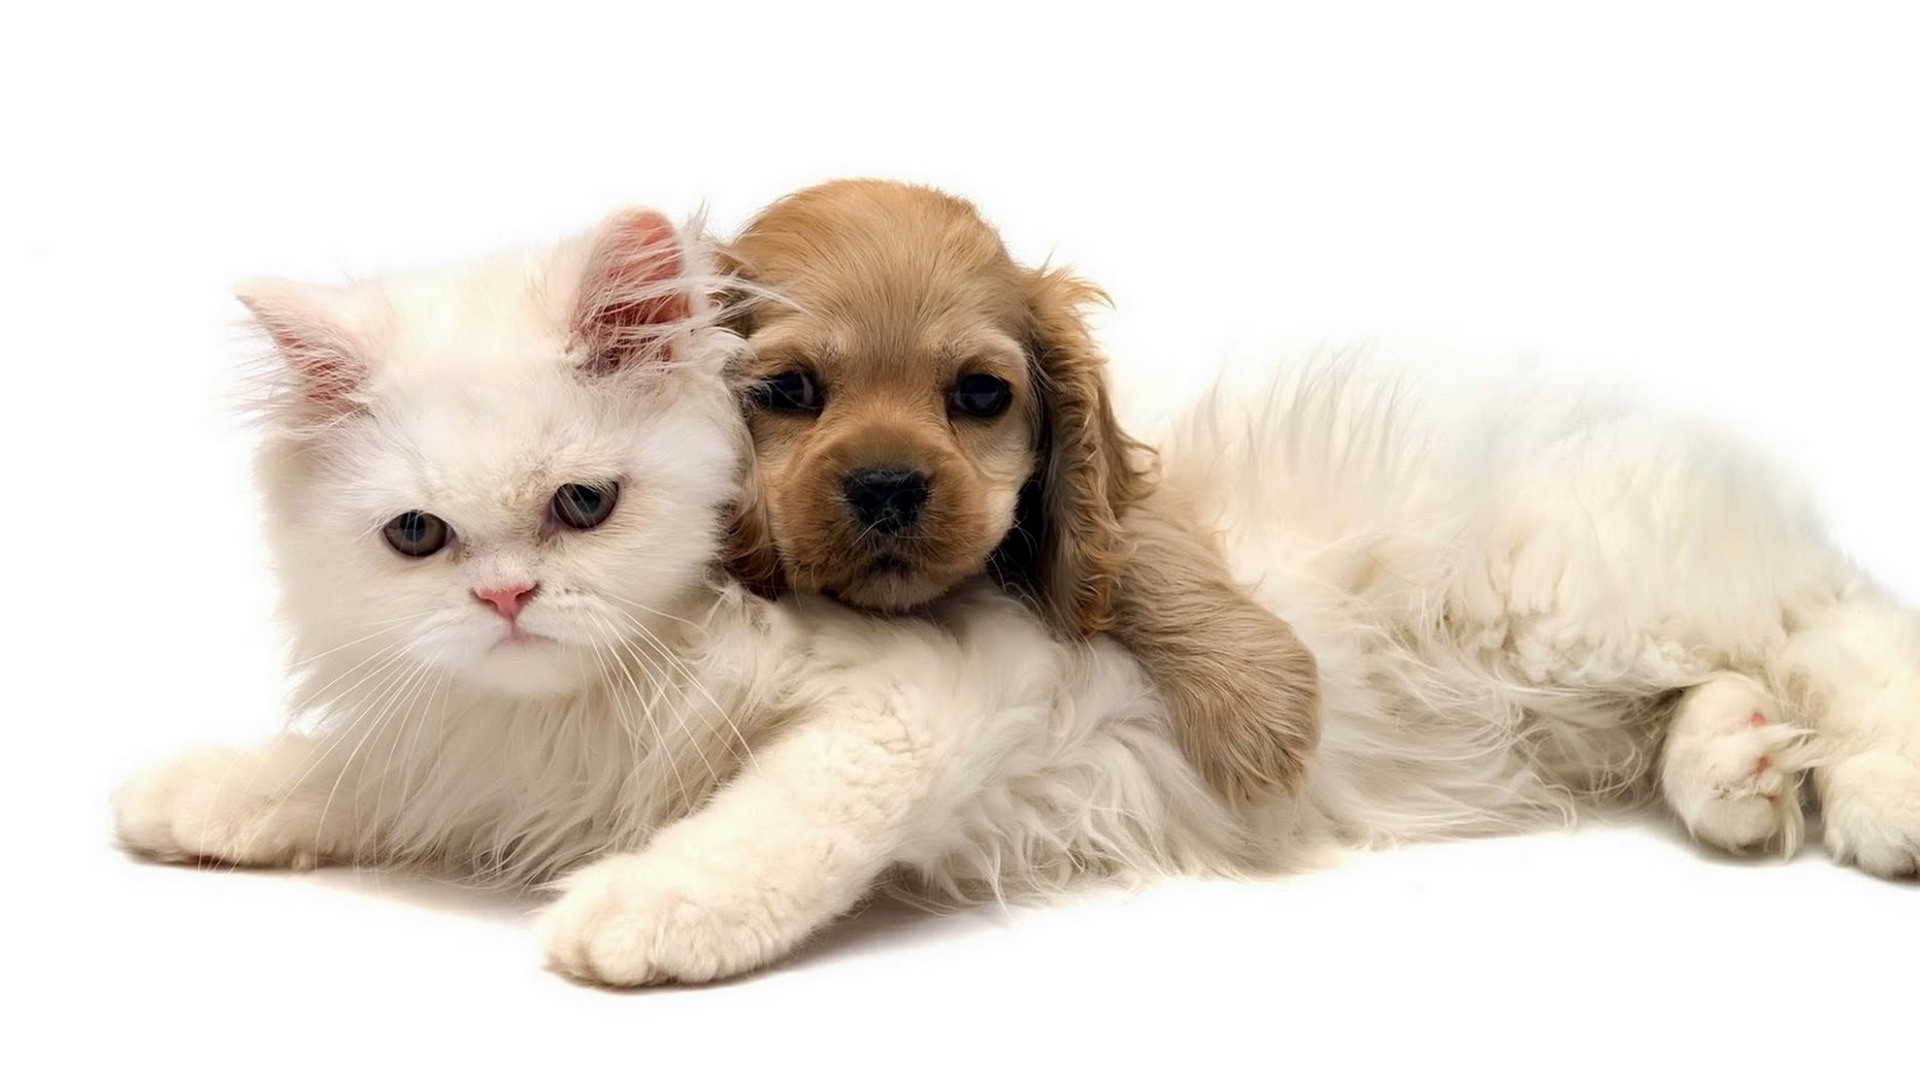 Descarga gratuita de fondo de pantalla para móvil de Animales, Perros, Gatos.